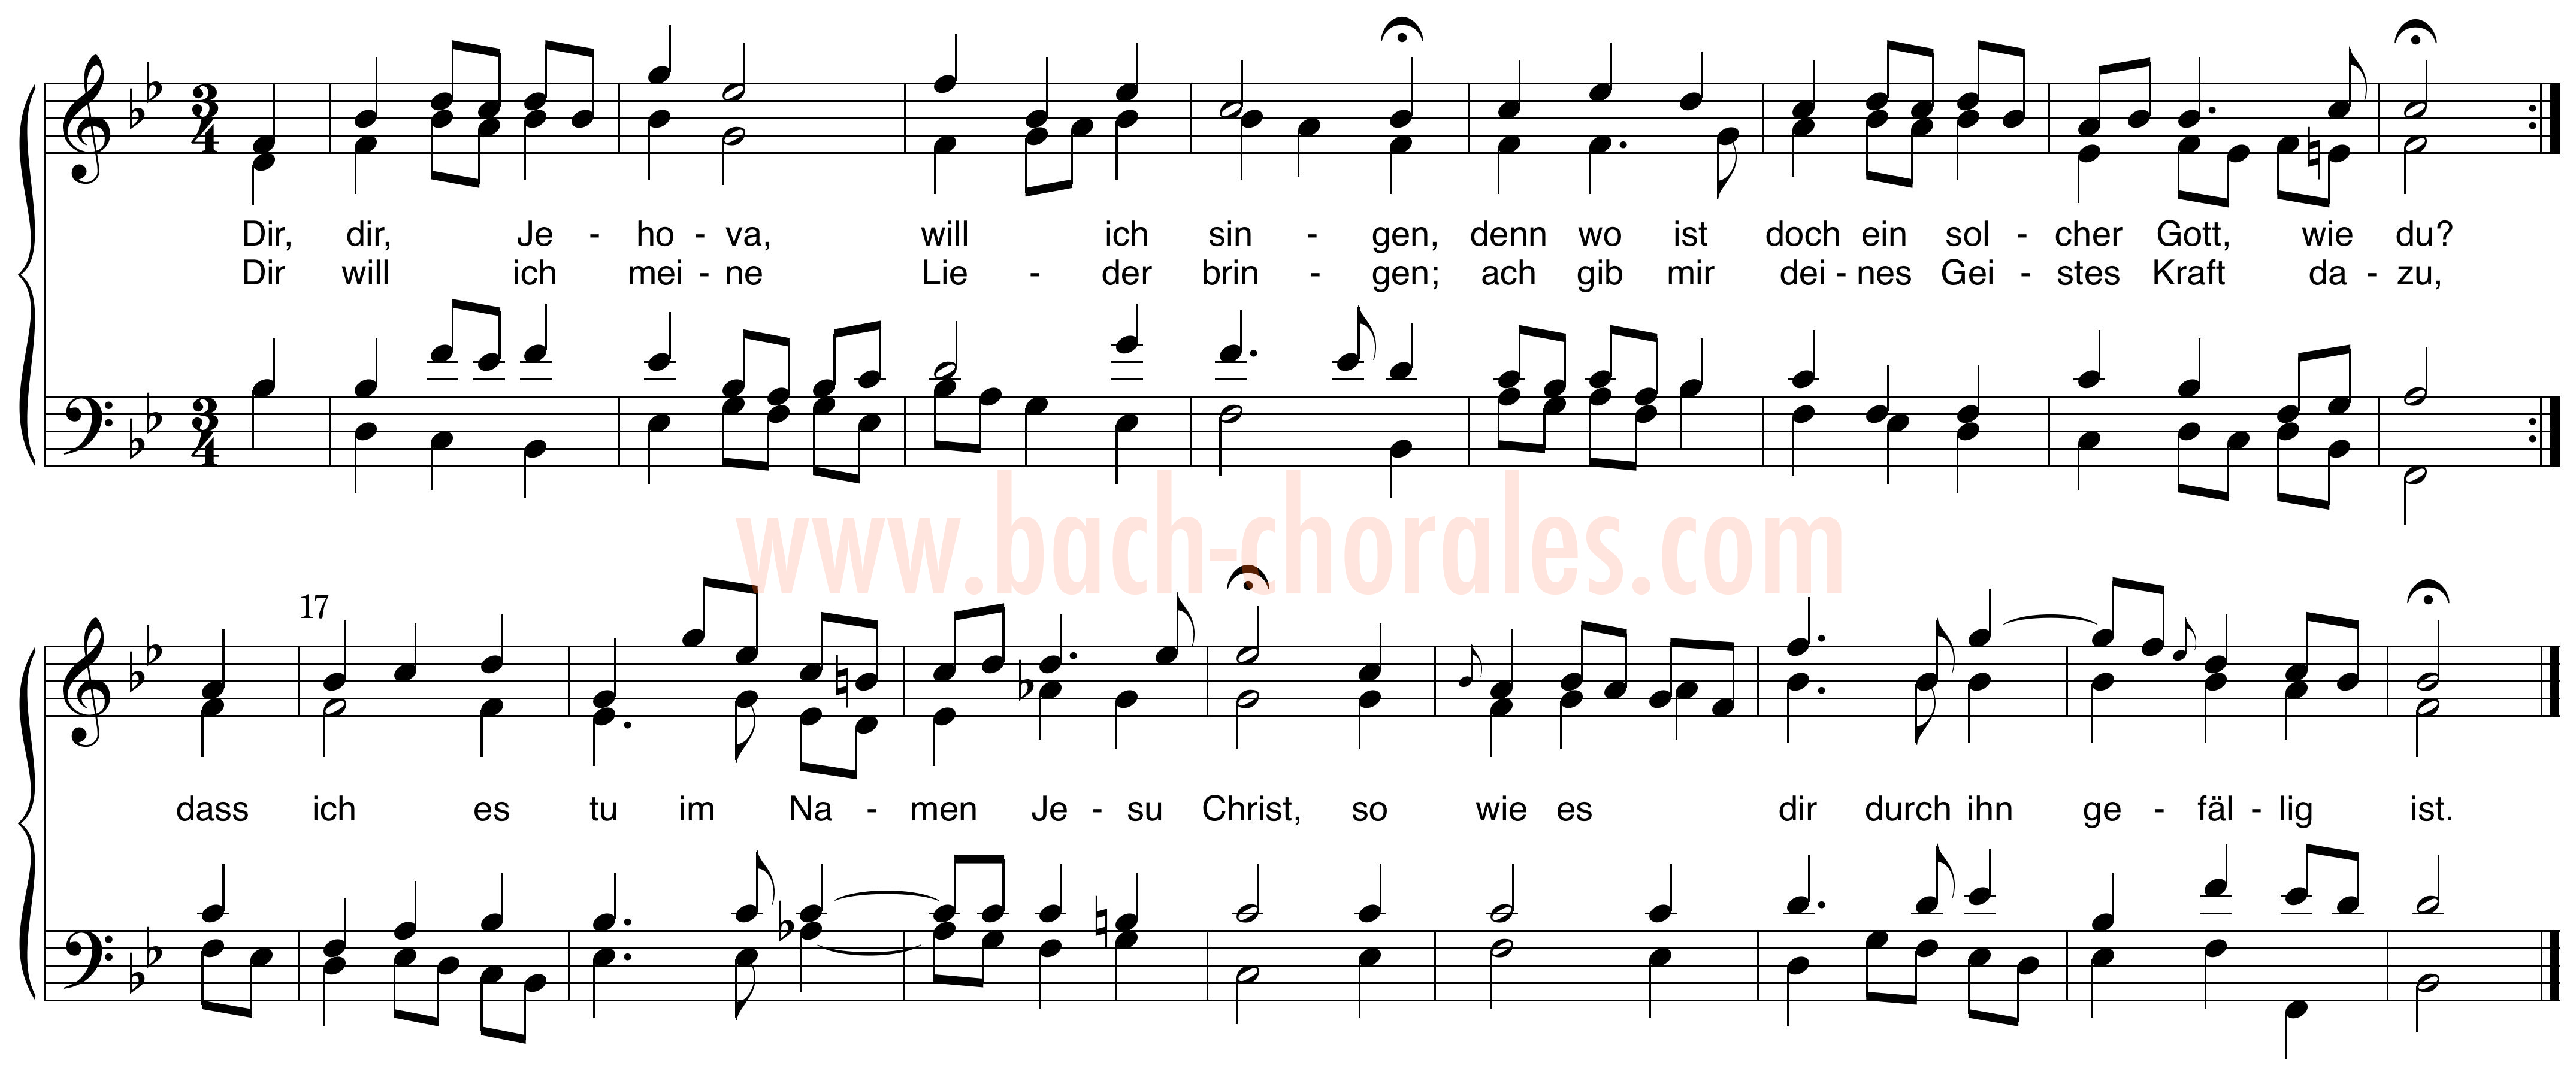 notenbeeld BWV 299 op https://www.bach-chorales.com/